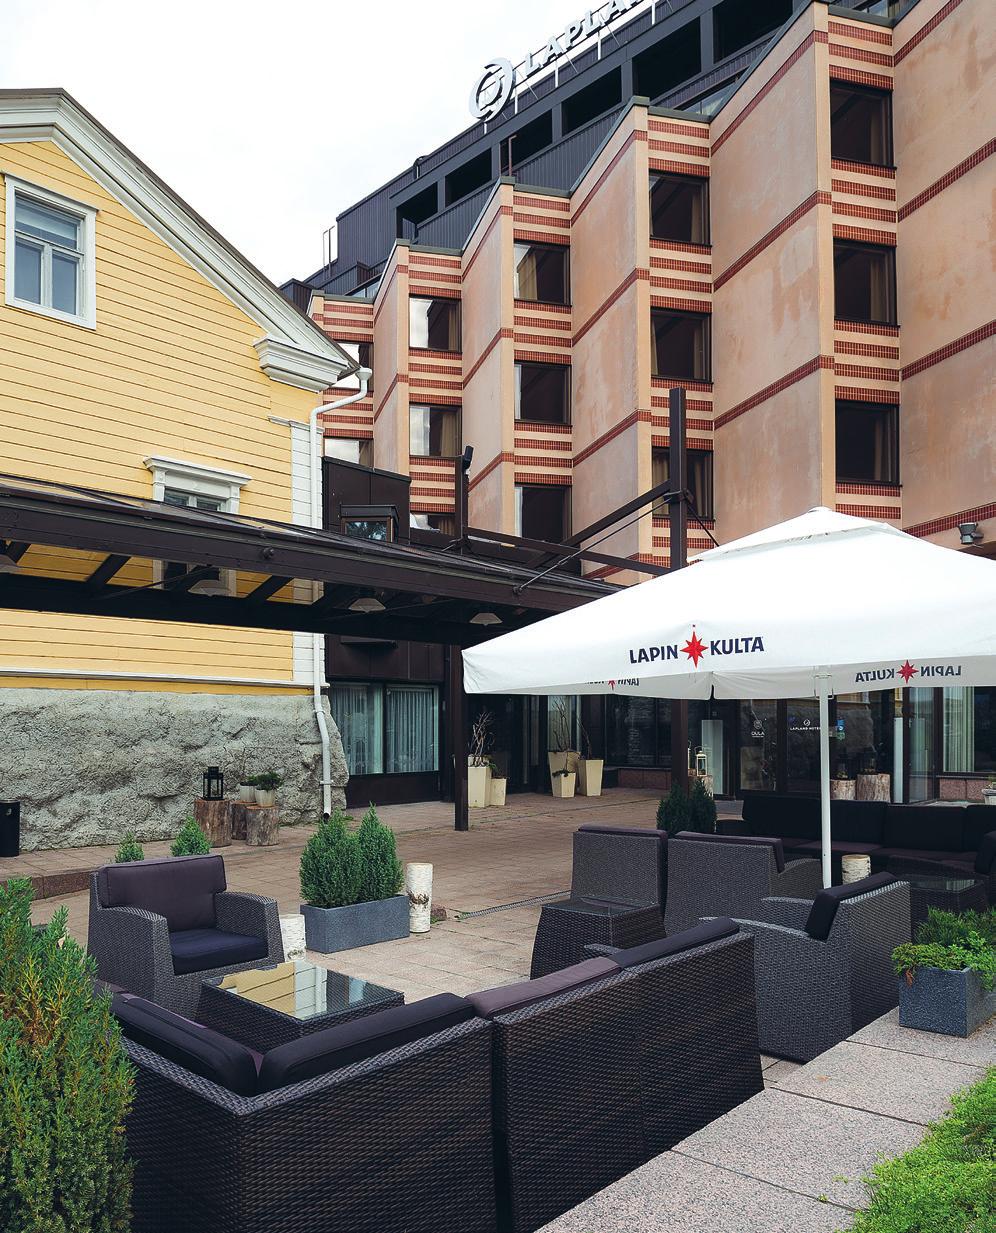 HUONEVAIHTOEHDOT Lapland Hotels Oulun huoneissa pohjoisen laadukkuus, tunnelma ja mystiset tarinat, johdattavat sinut rentoutumisen